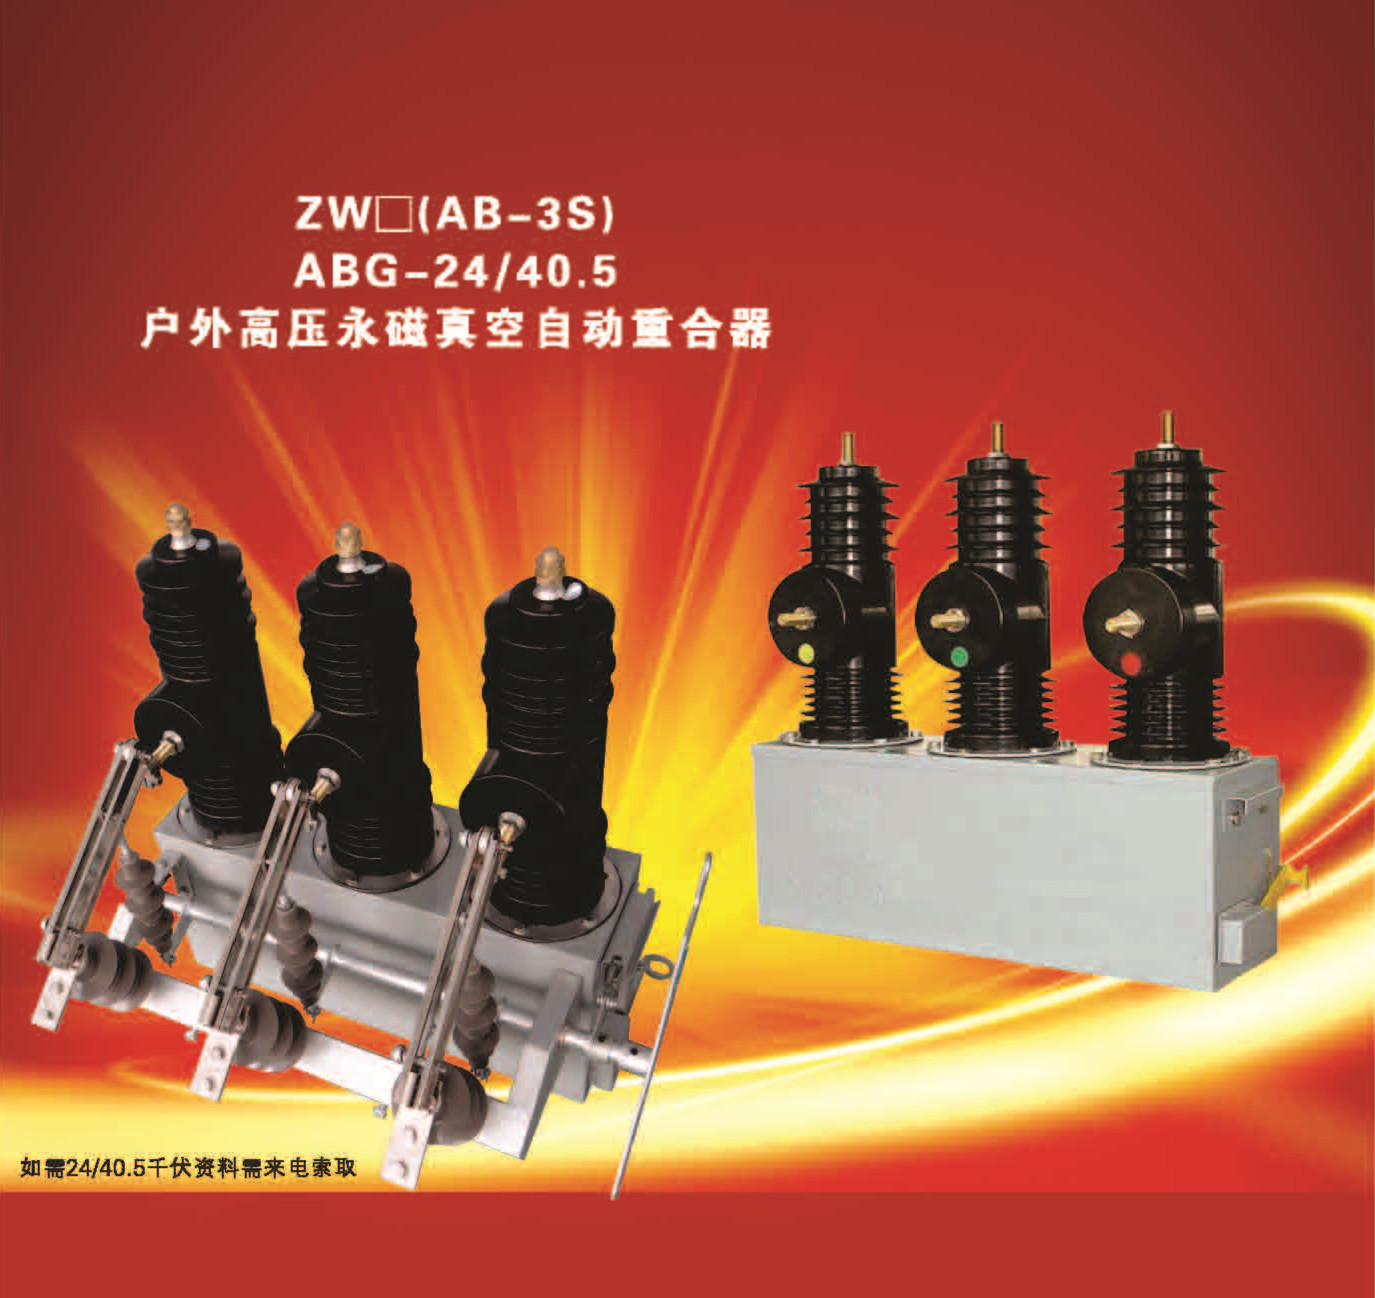 AB-3S(ABG-24KV40.5KV)户外高压永磁真空自动重合器